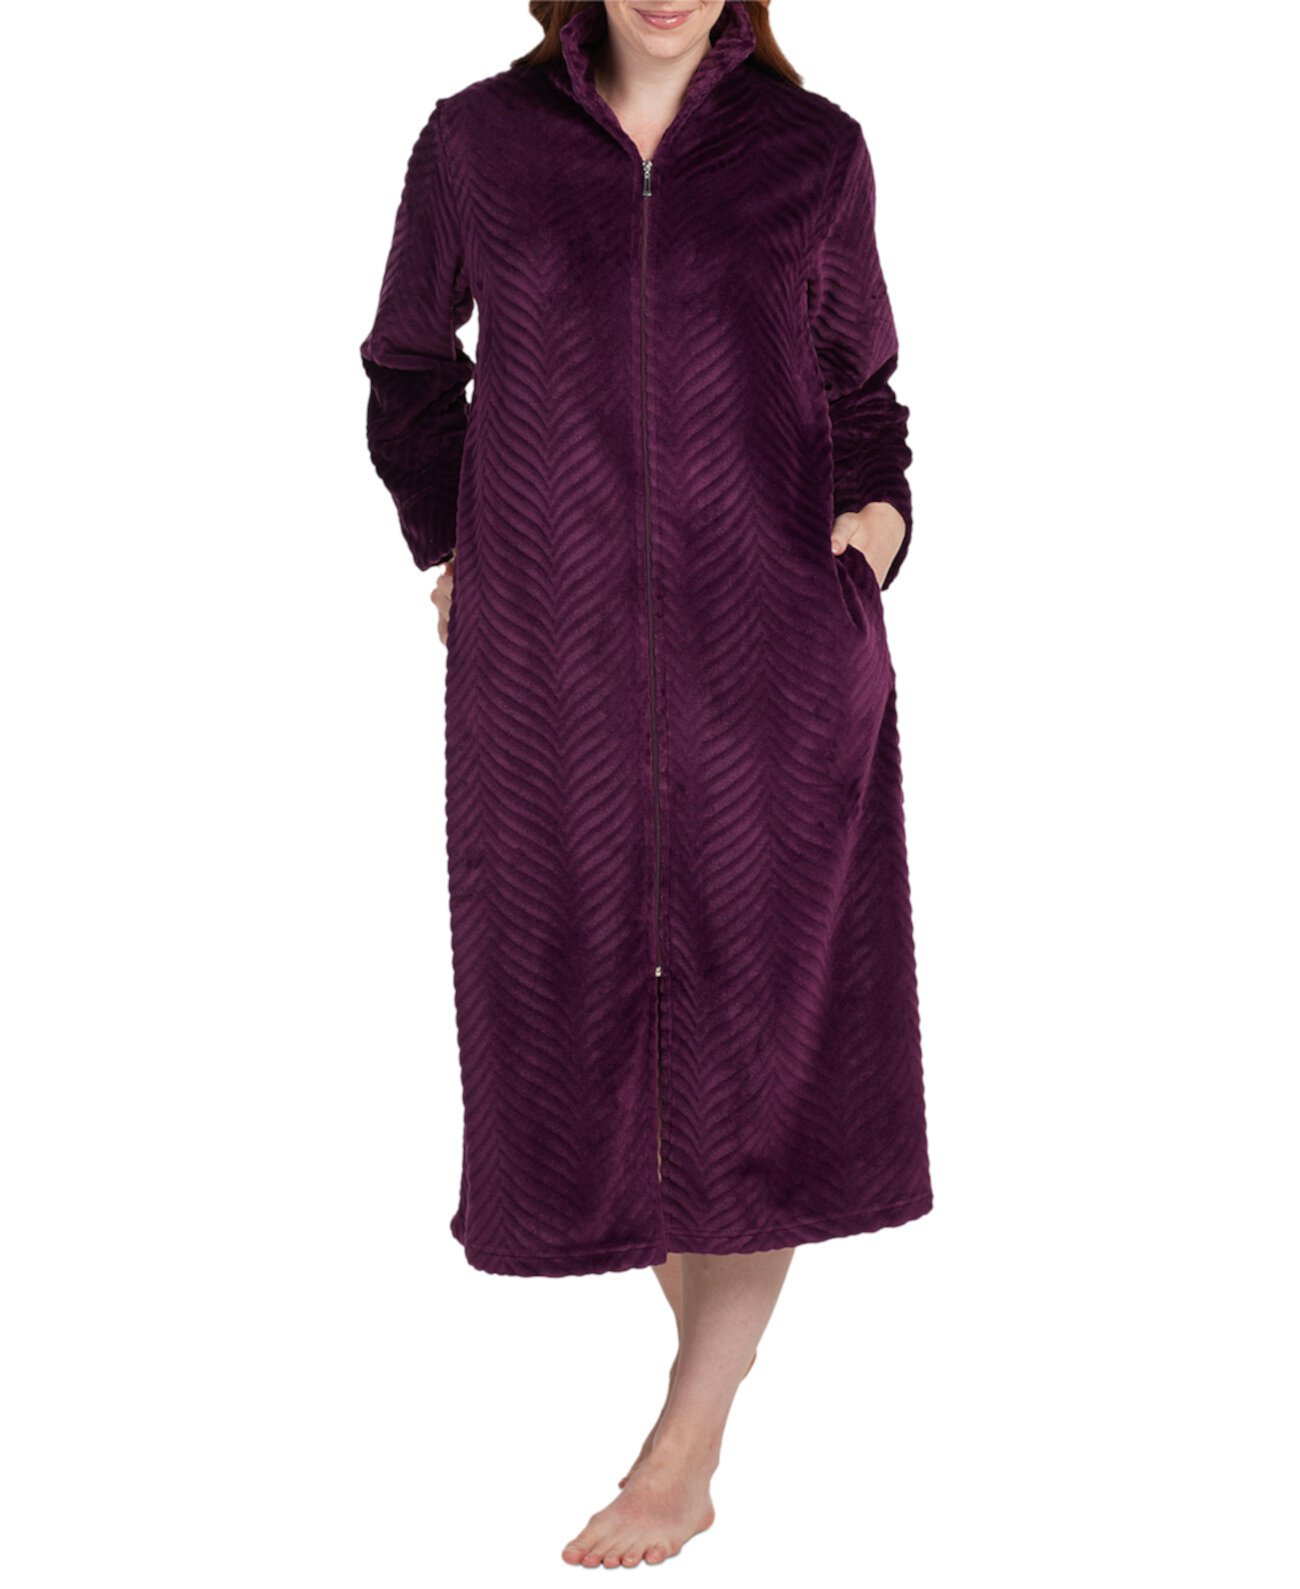 Женский текстурированный халат на молнии спереди Miss Elaine